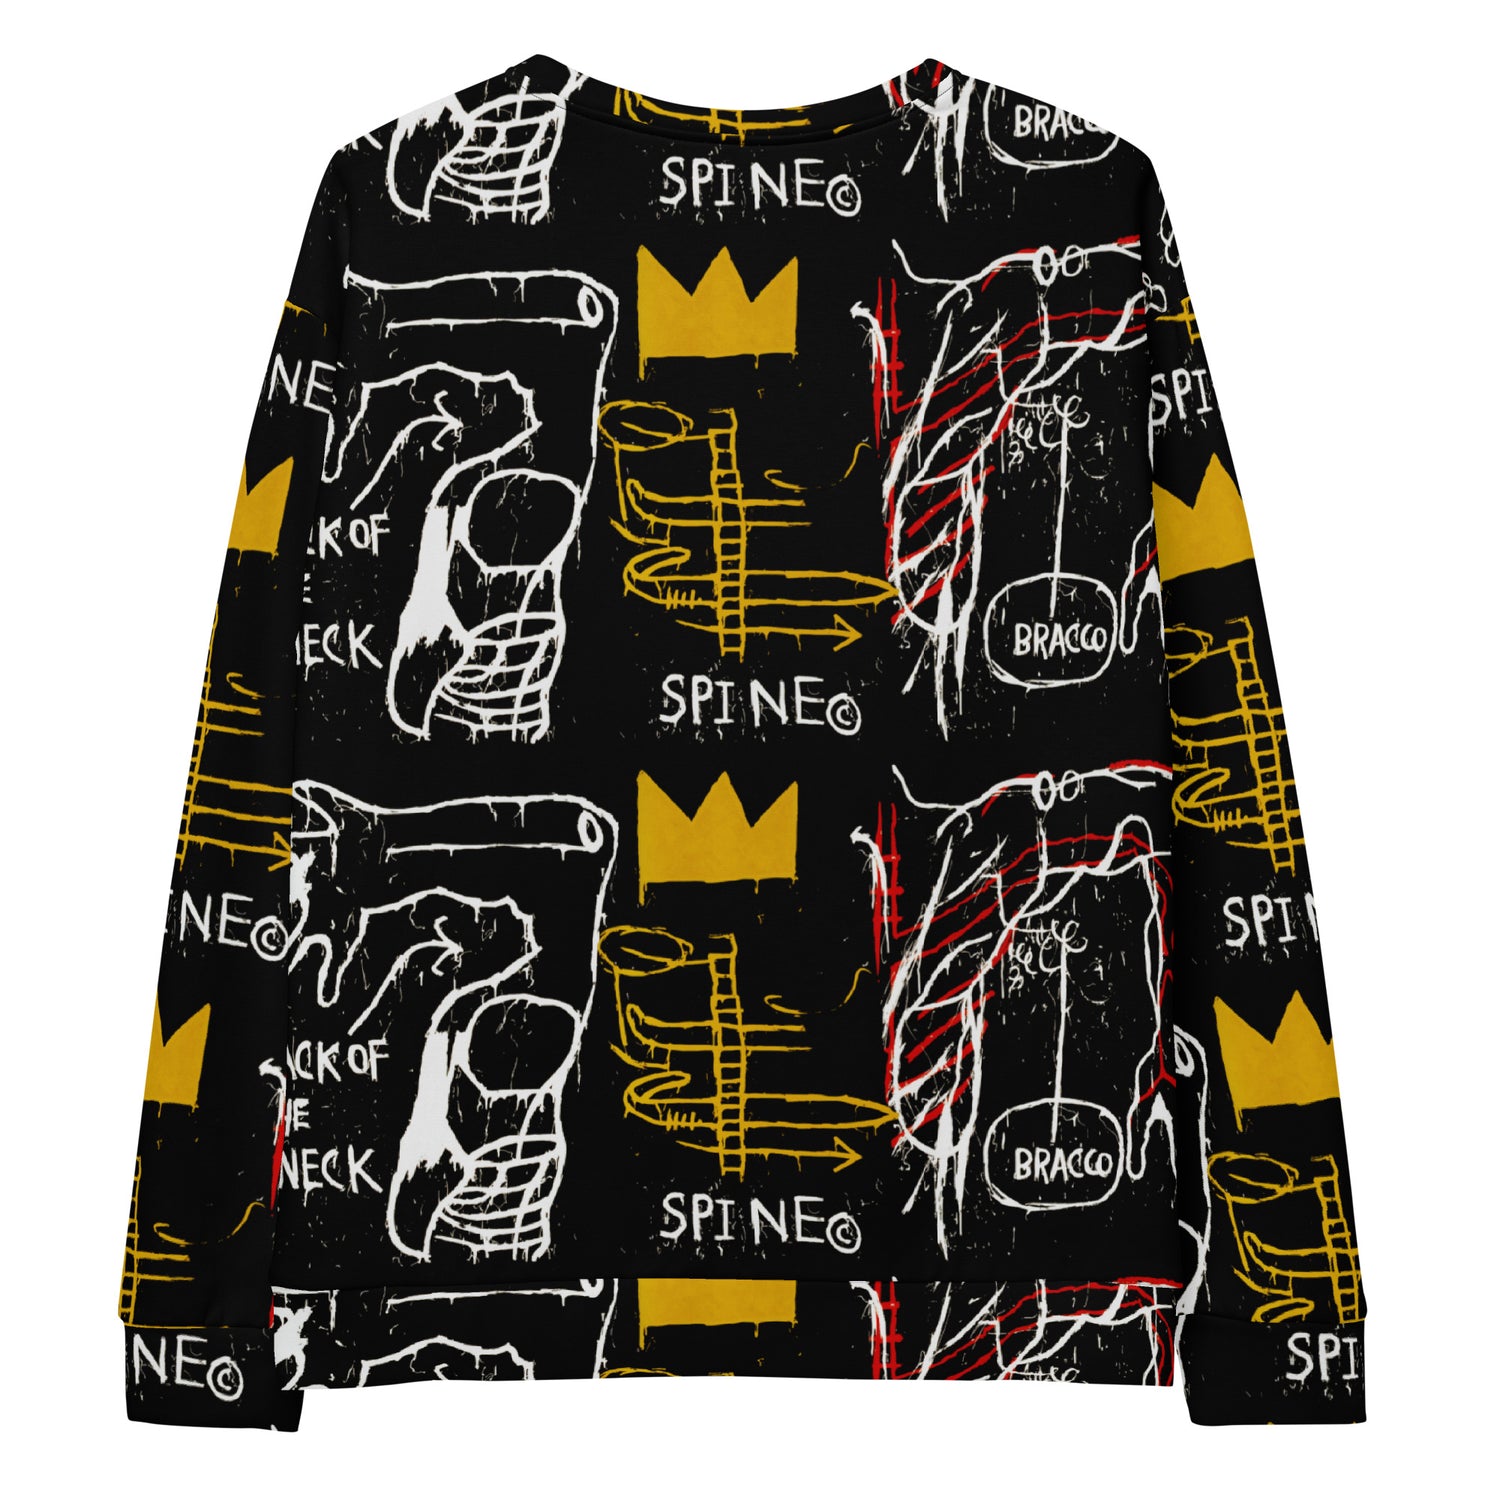 Jean-Michel Basquiat "Back of the Neck" Artwork Printed Premium Streetwear Crewneck Sweatshirt Harajuku Graffiti